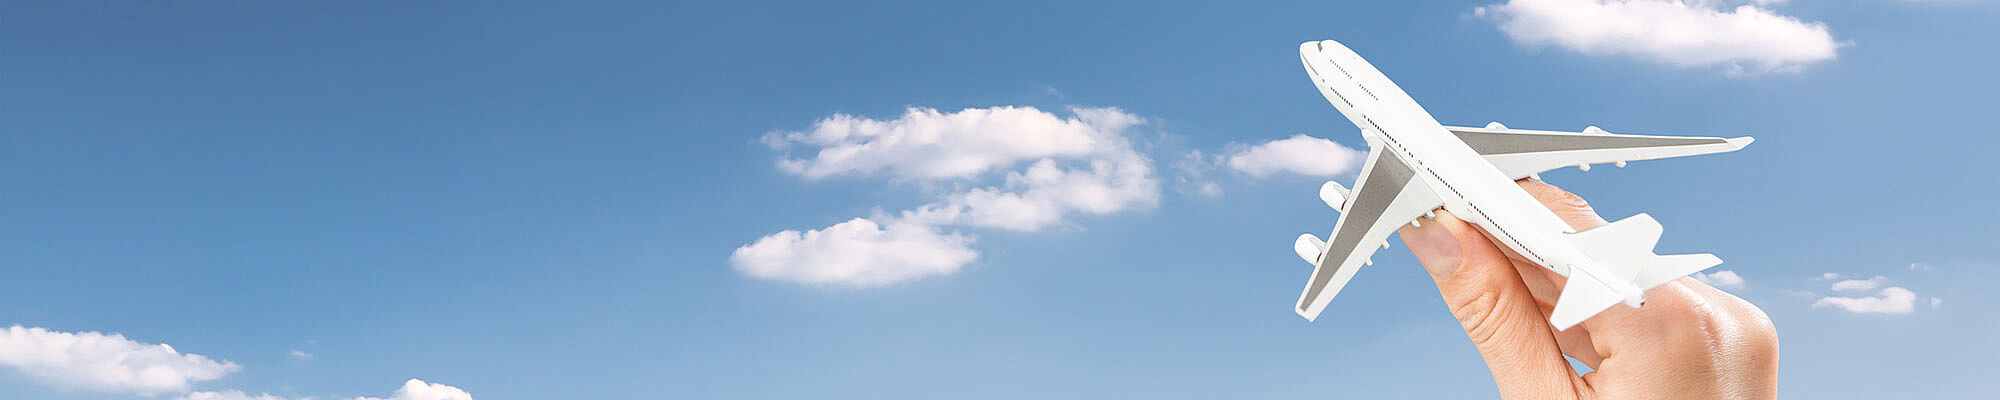 Foto: Himmel mit Wolken. Eine Hand steuert ein Flugzeug